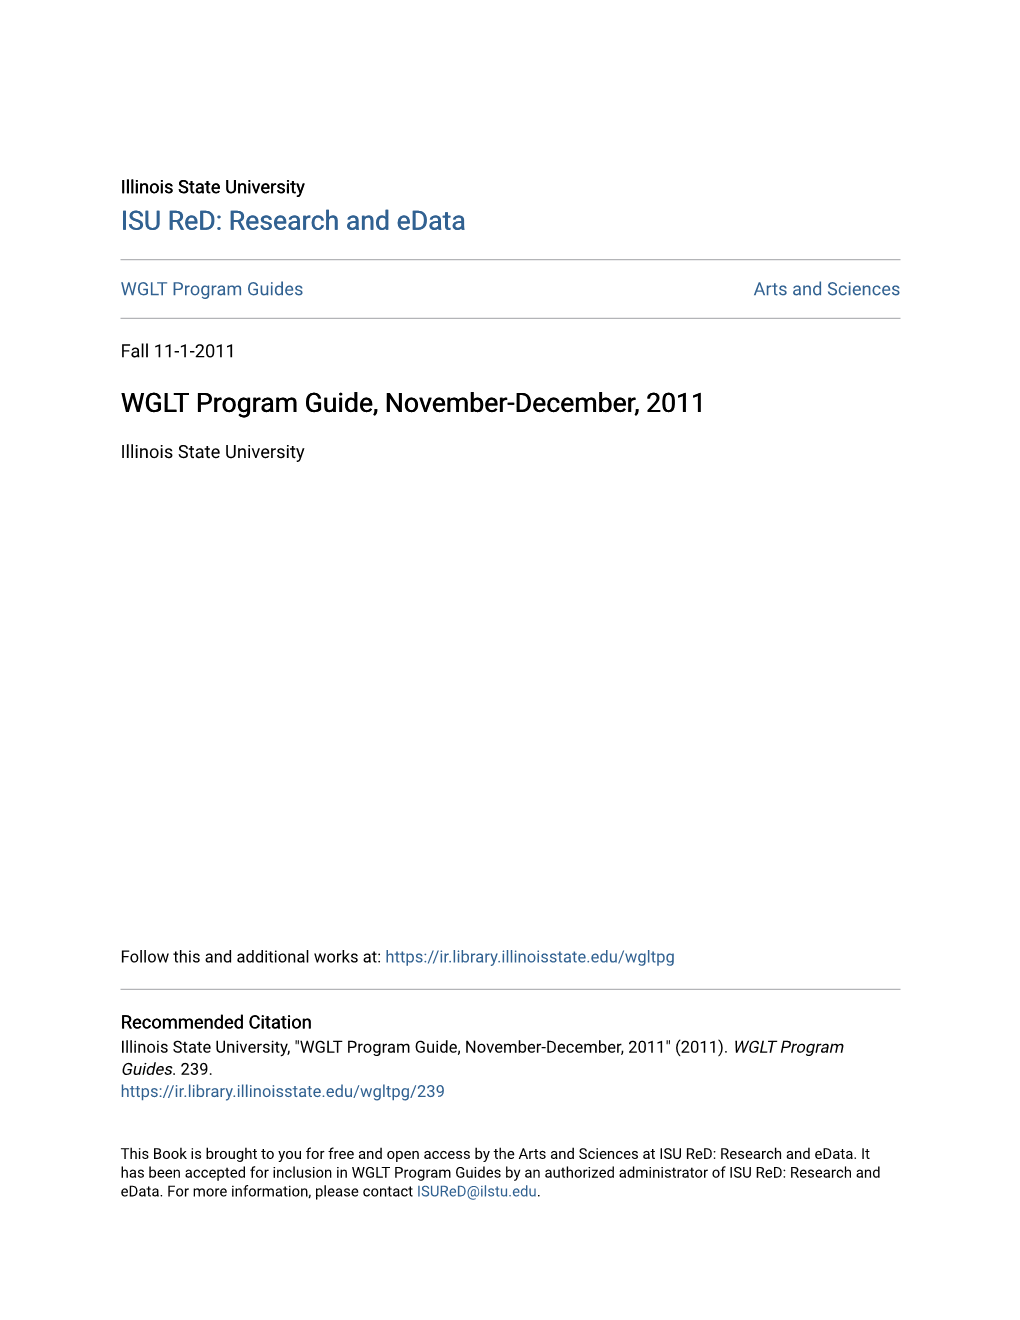 WGLT Program Guide, November-December, 2011